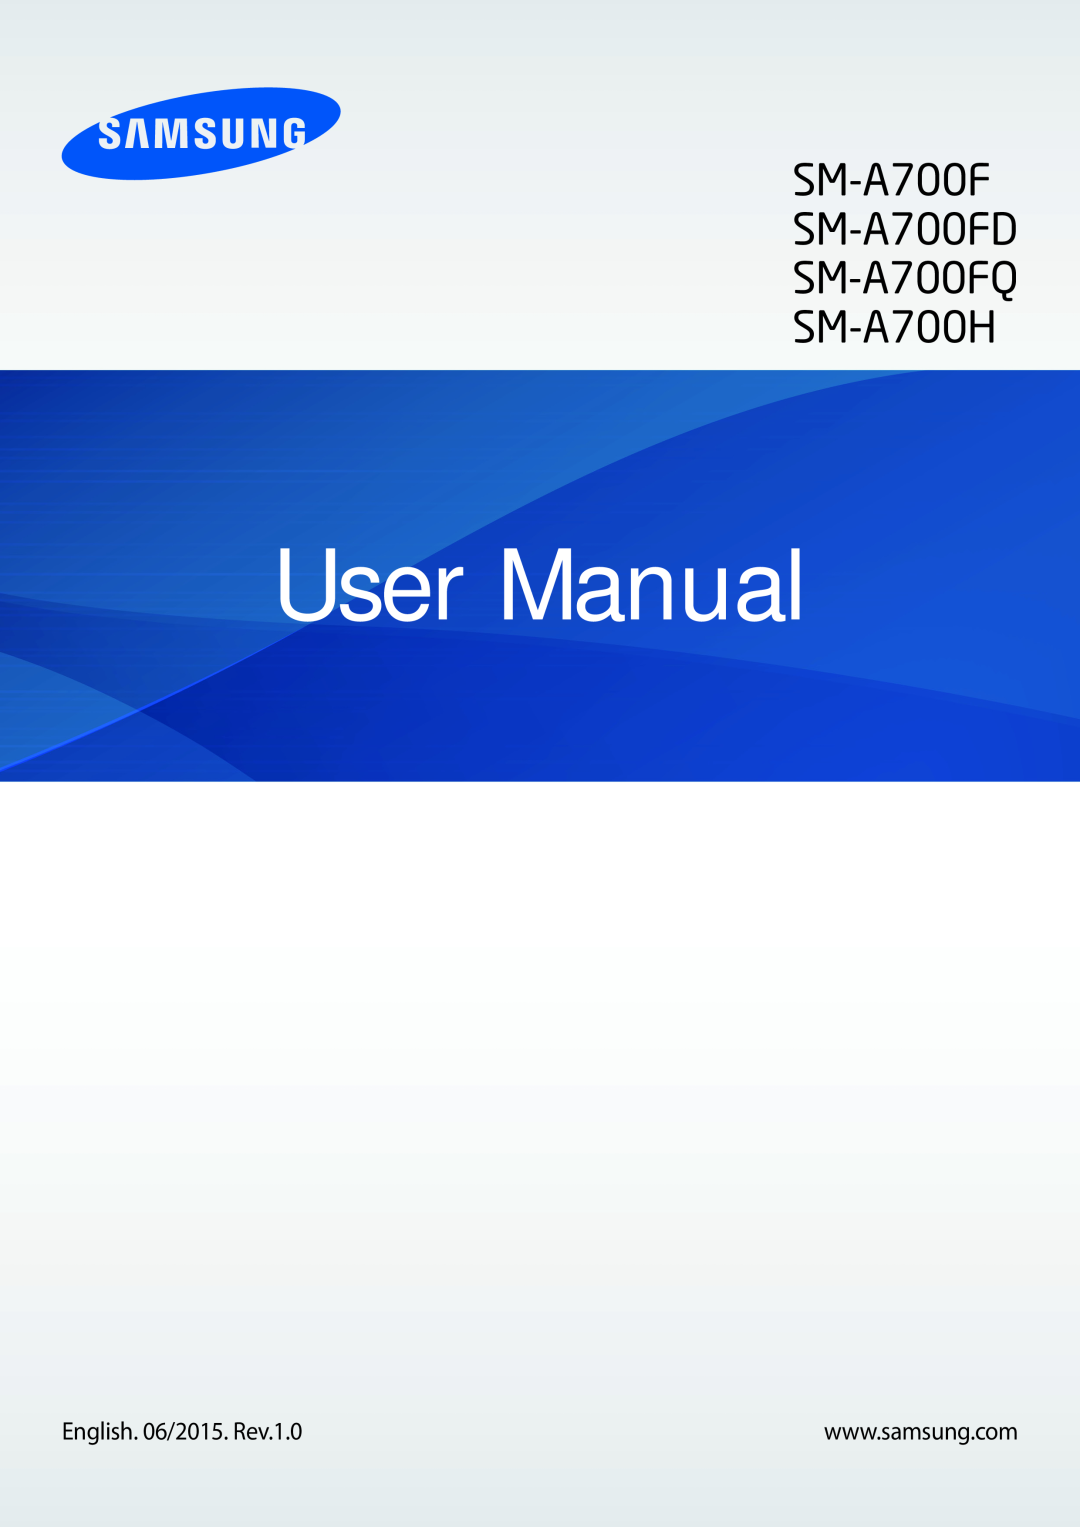 Samsung SM-A700FZKACYO, SM-A700FZKADBT, SM-A700FZWATPH manual User Manual, SM-A700F SM-A700FD SM-A700FQ SM-A700H 